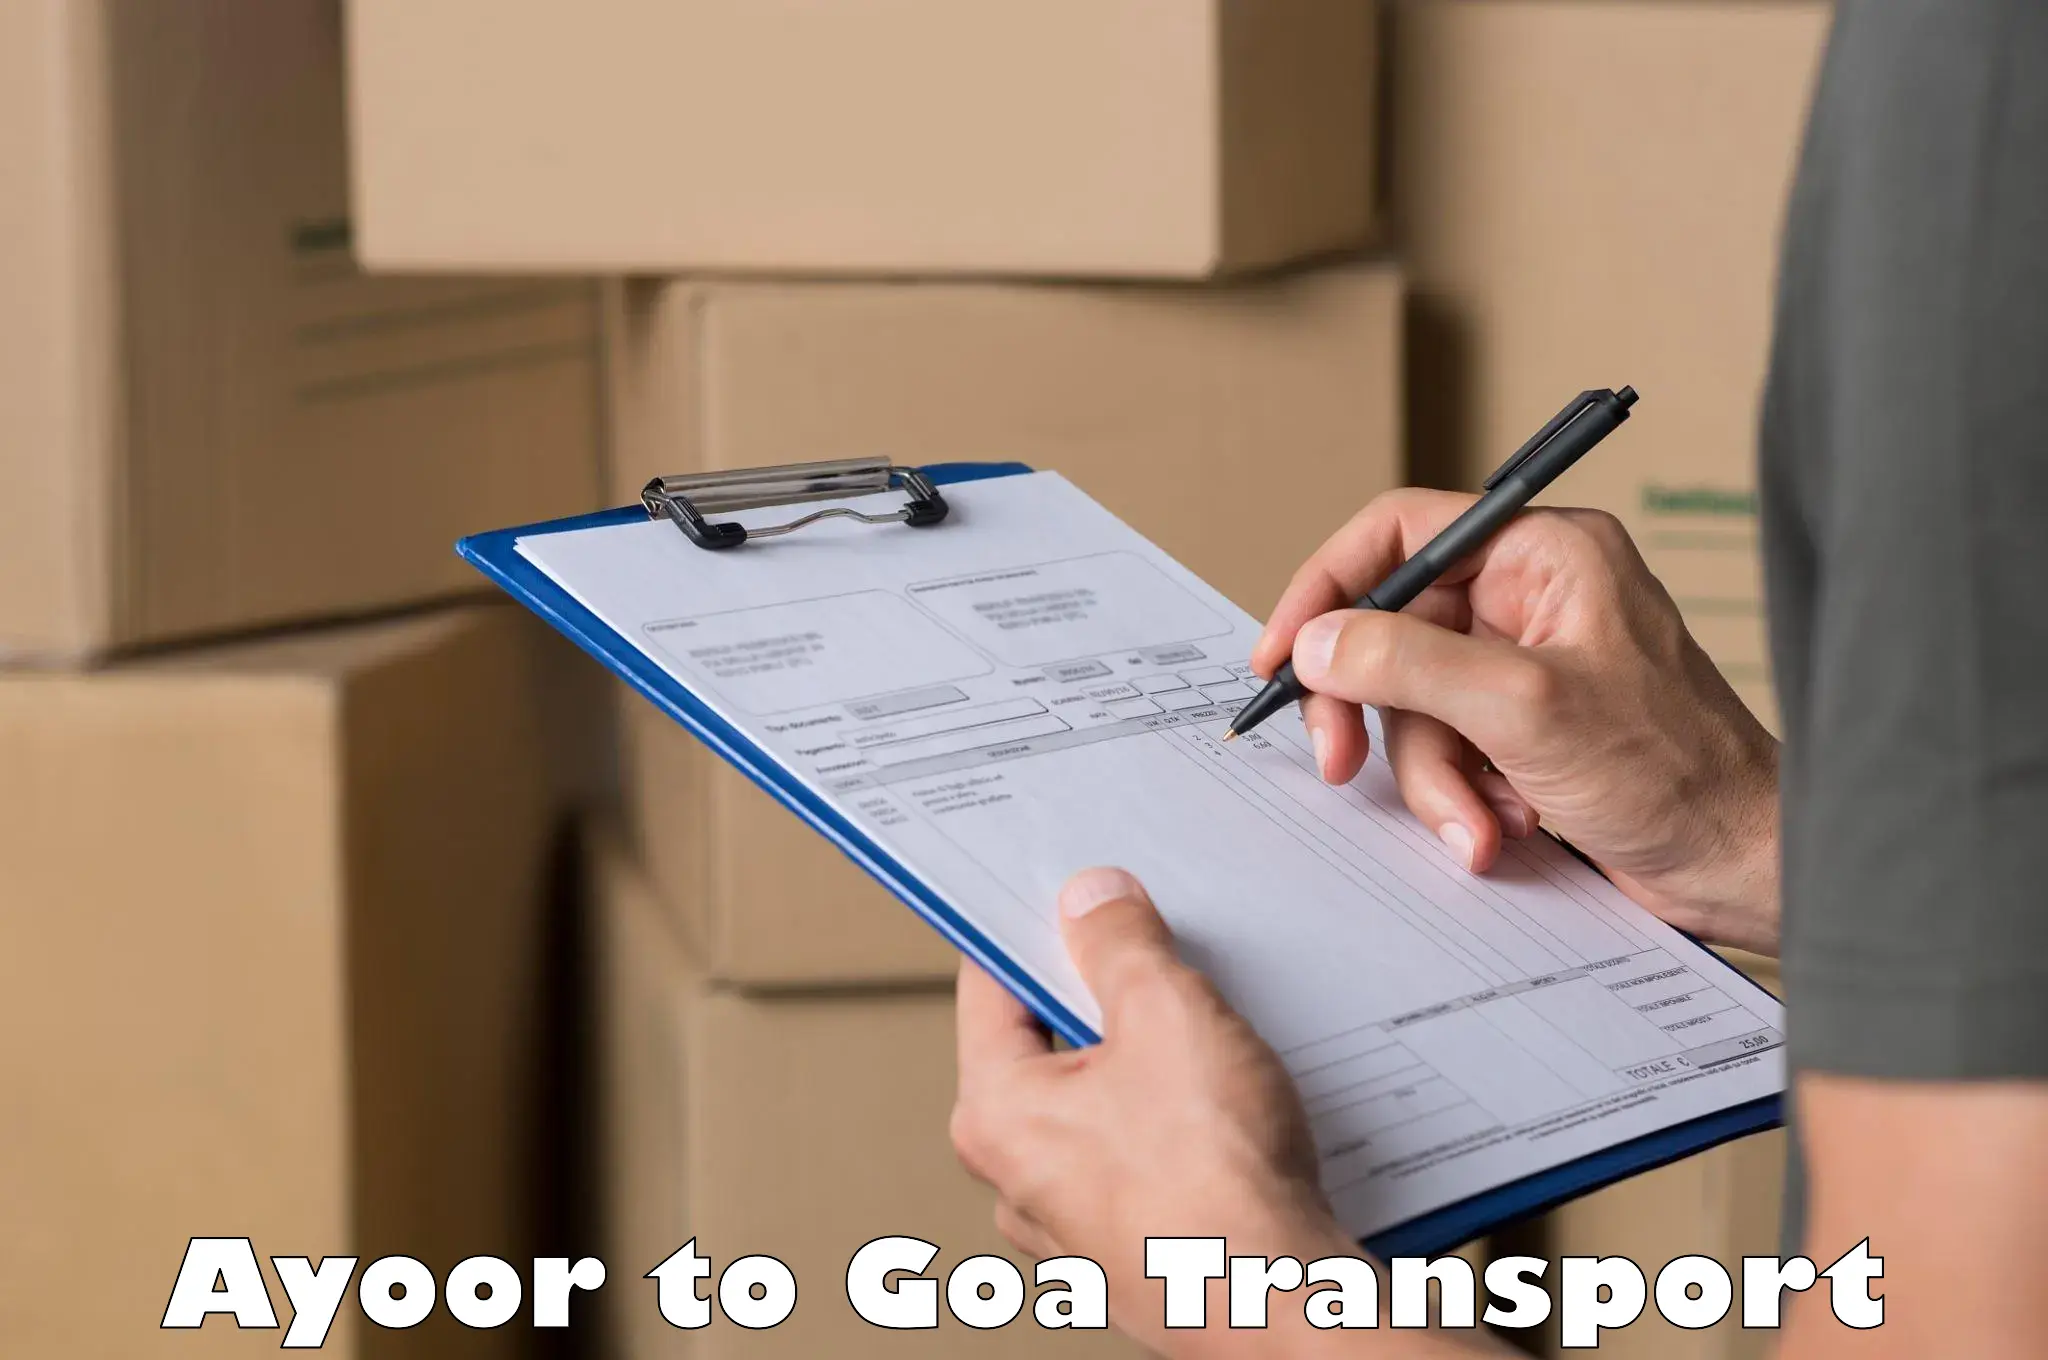 Online transport service Ayoor to Goa University